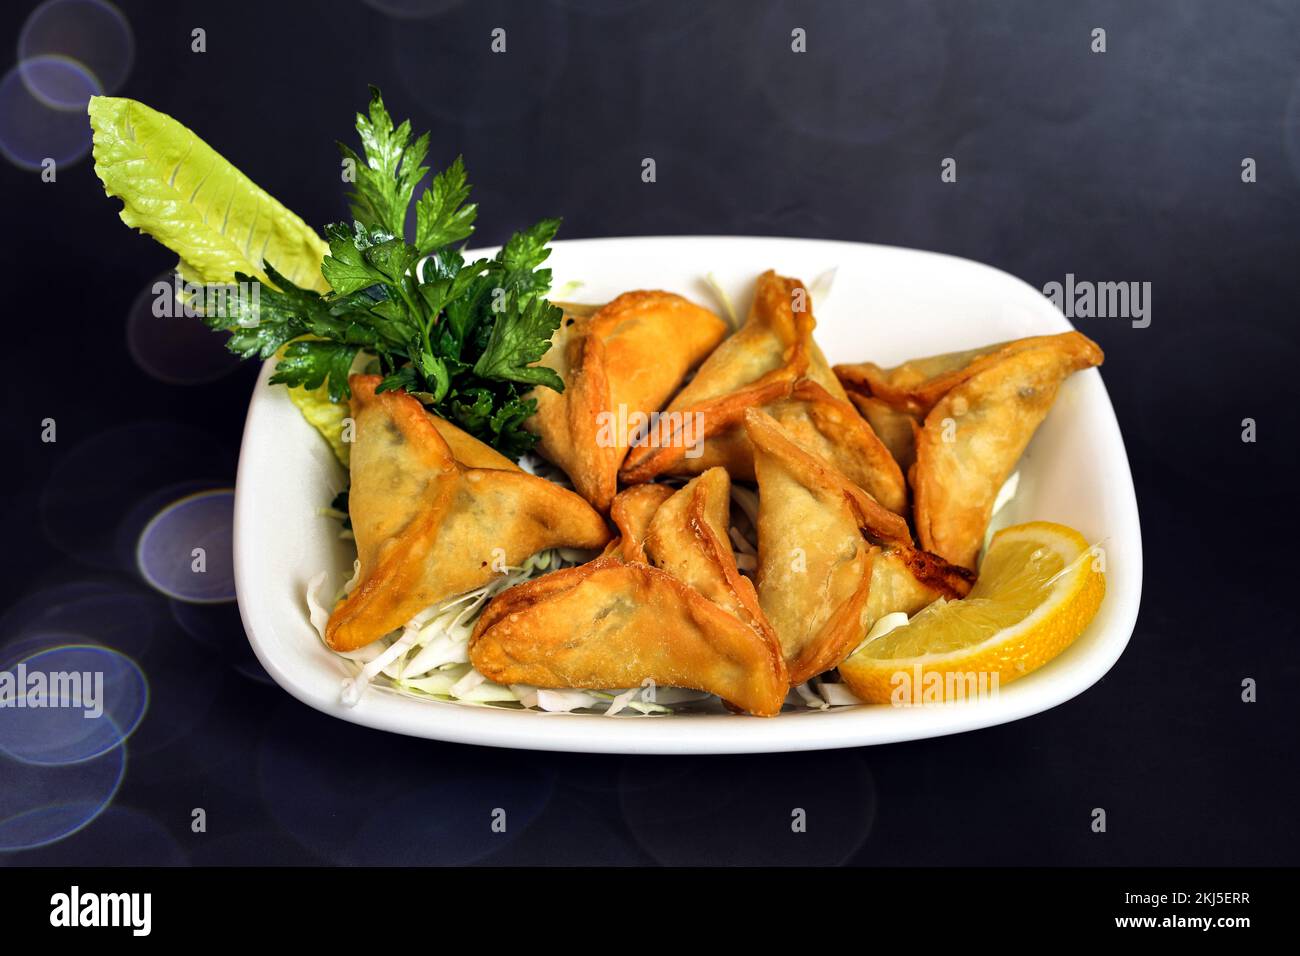 Photos de haute qualité de la cuisine arabe libanaise Banque D'Images